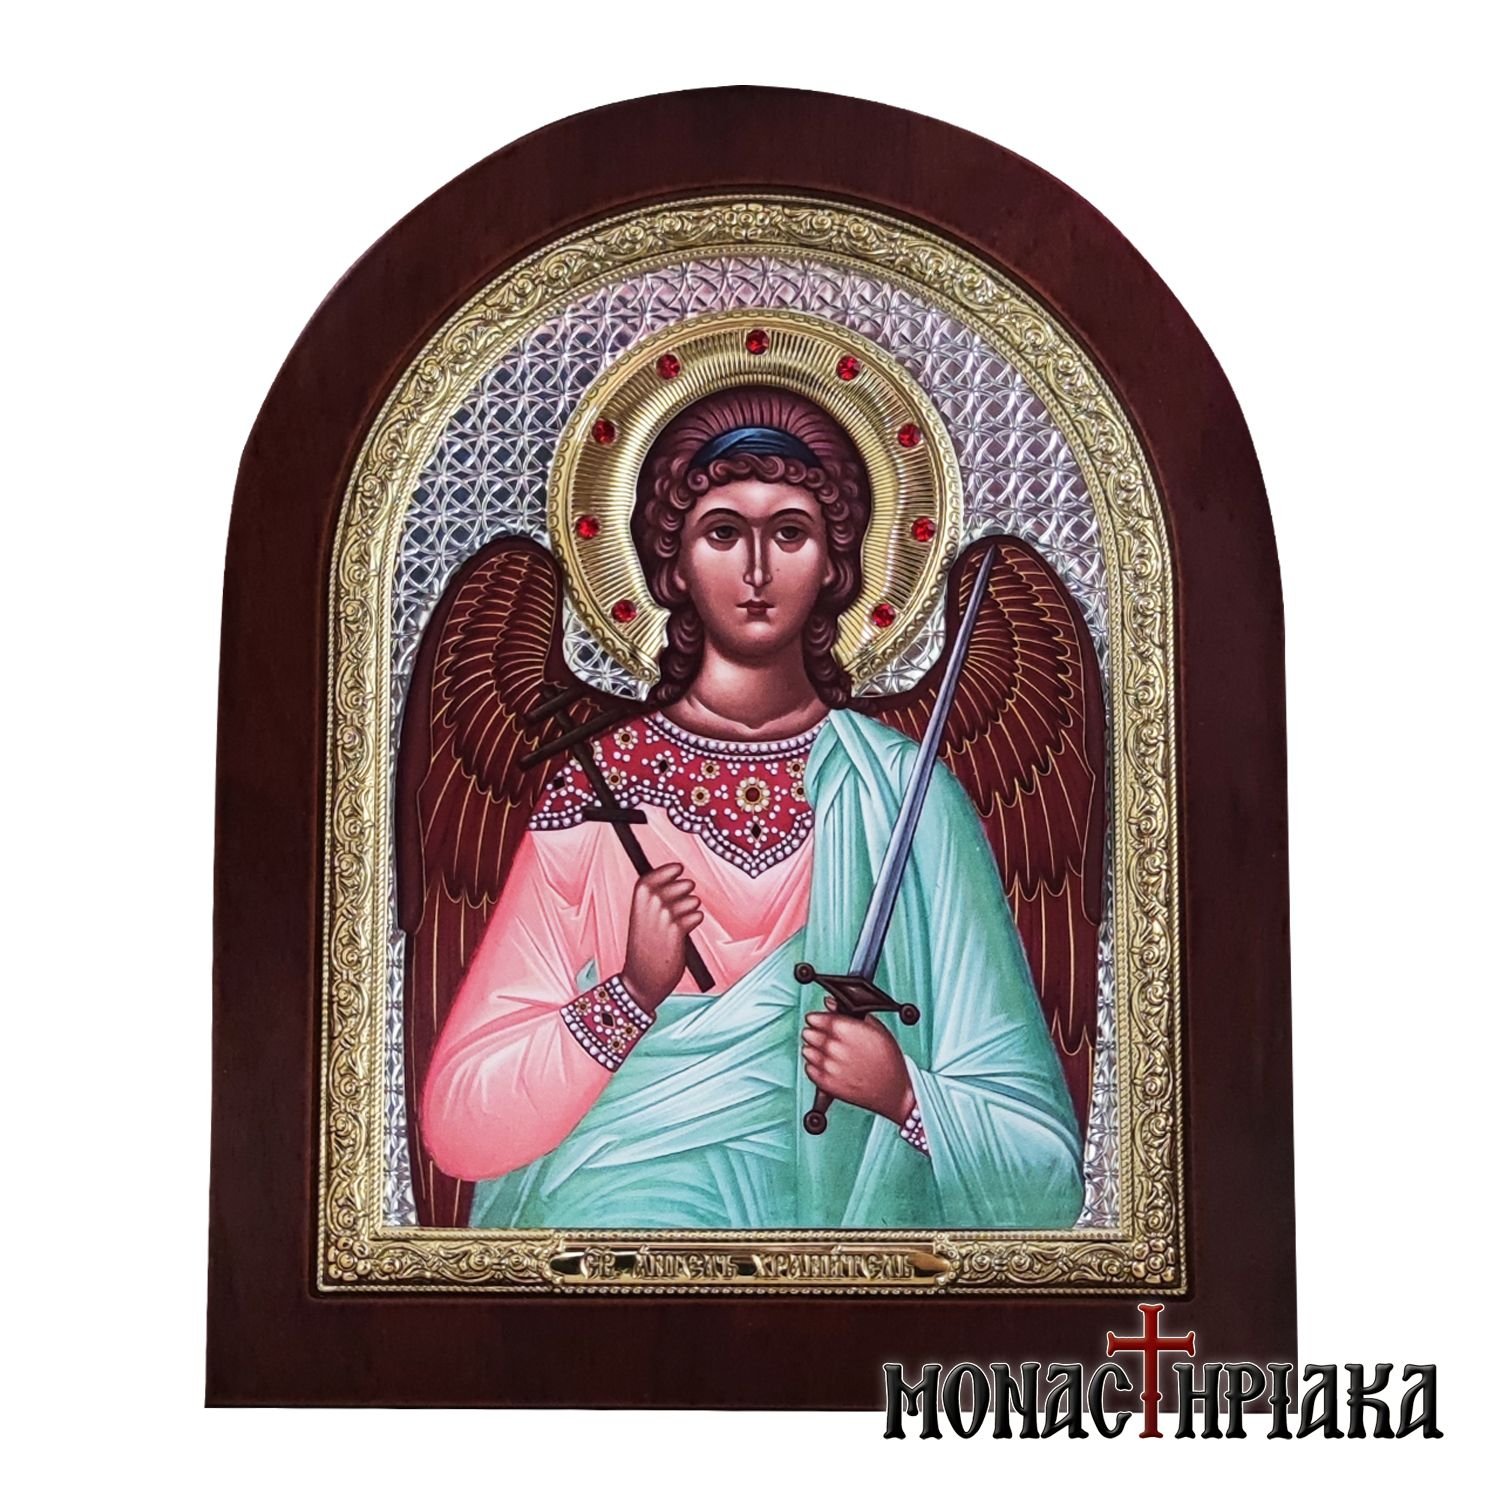 Archangel Michael | Monastiriaka